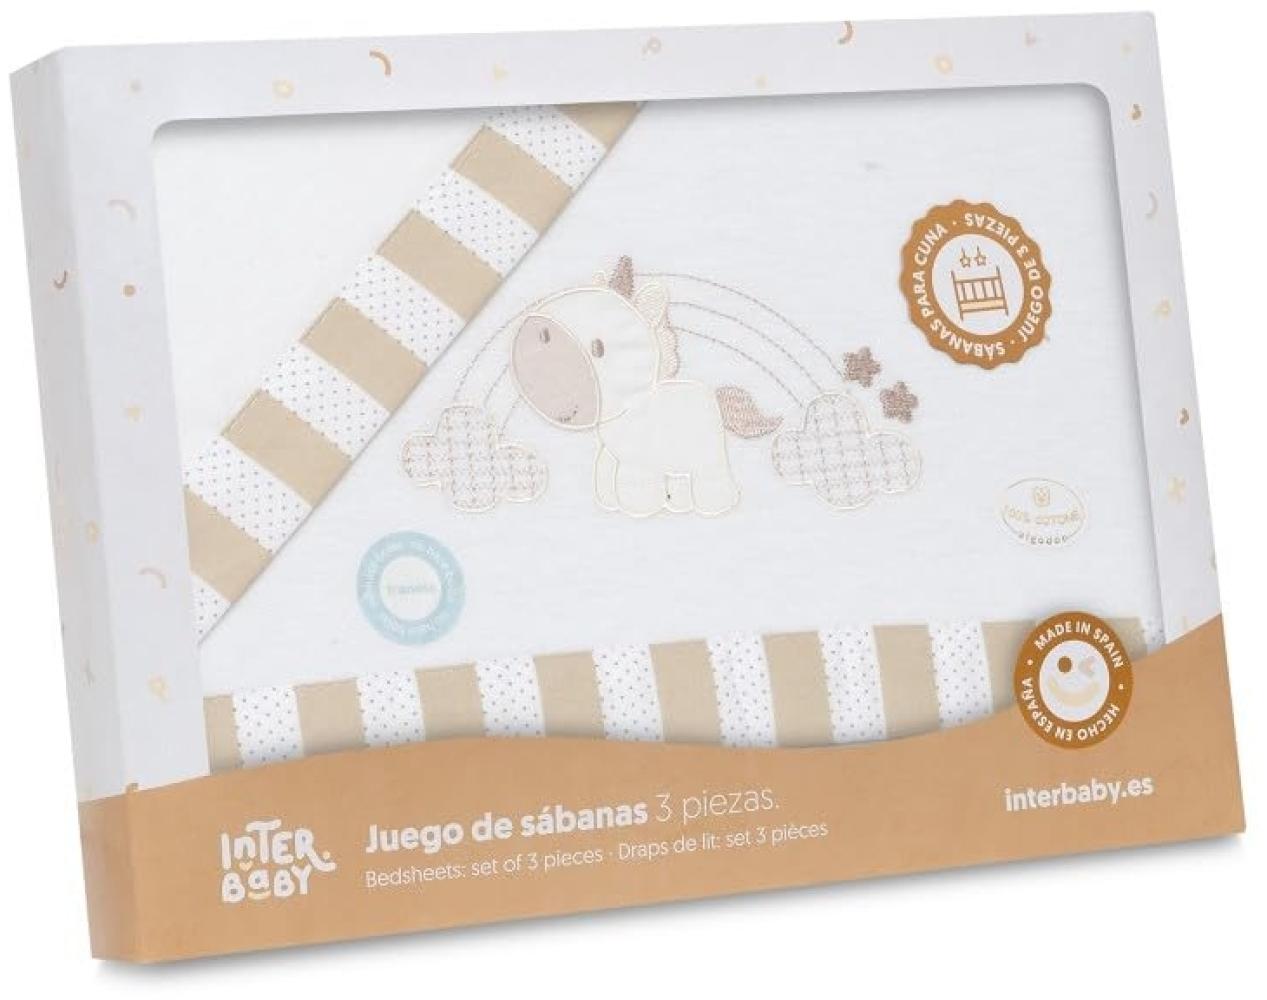 INTERBABY · Flanell Bettlaken-Set für Babybett, Unicornio Nubes" weiß beige · 100% Baumwolle · 3- Teilig Winter -Bettwäsche-Set für Babywiege Bild 1